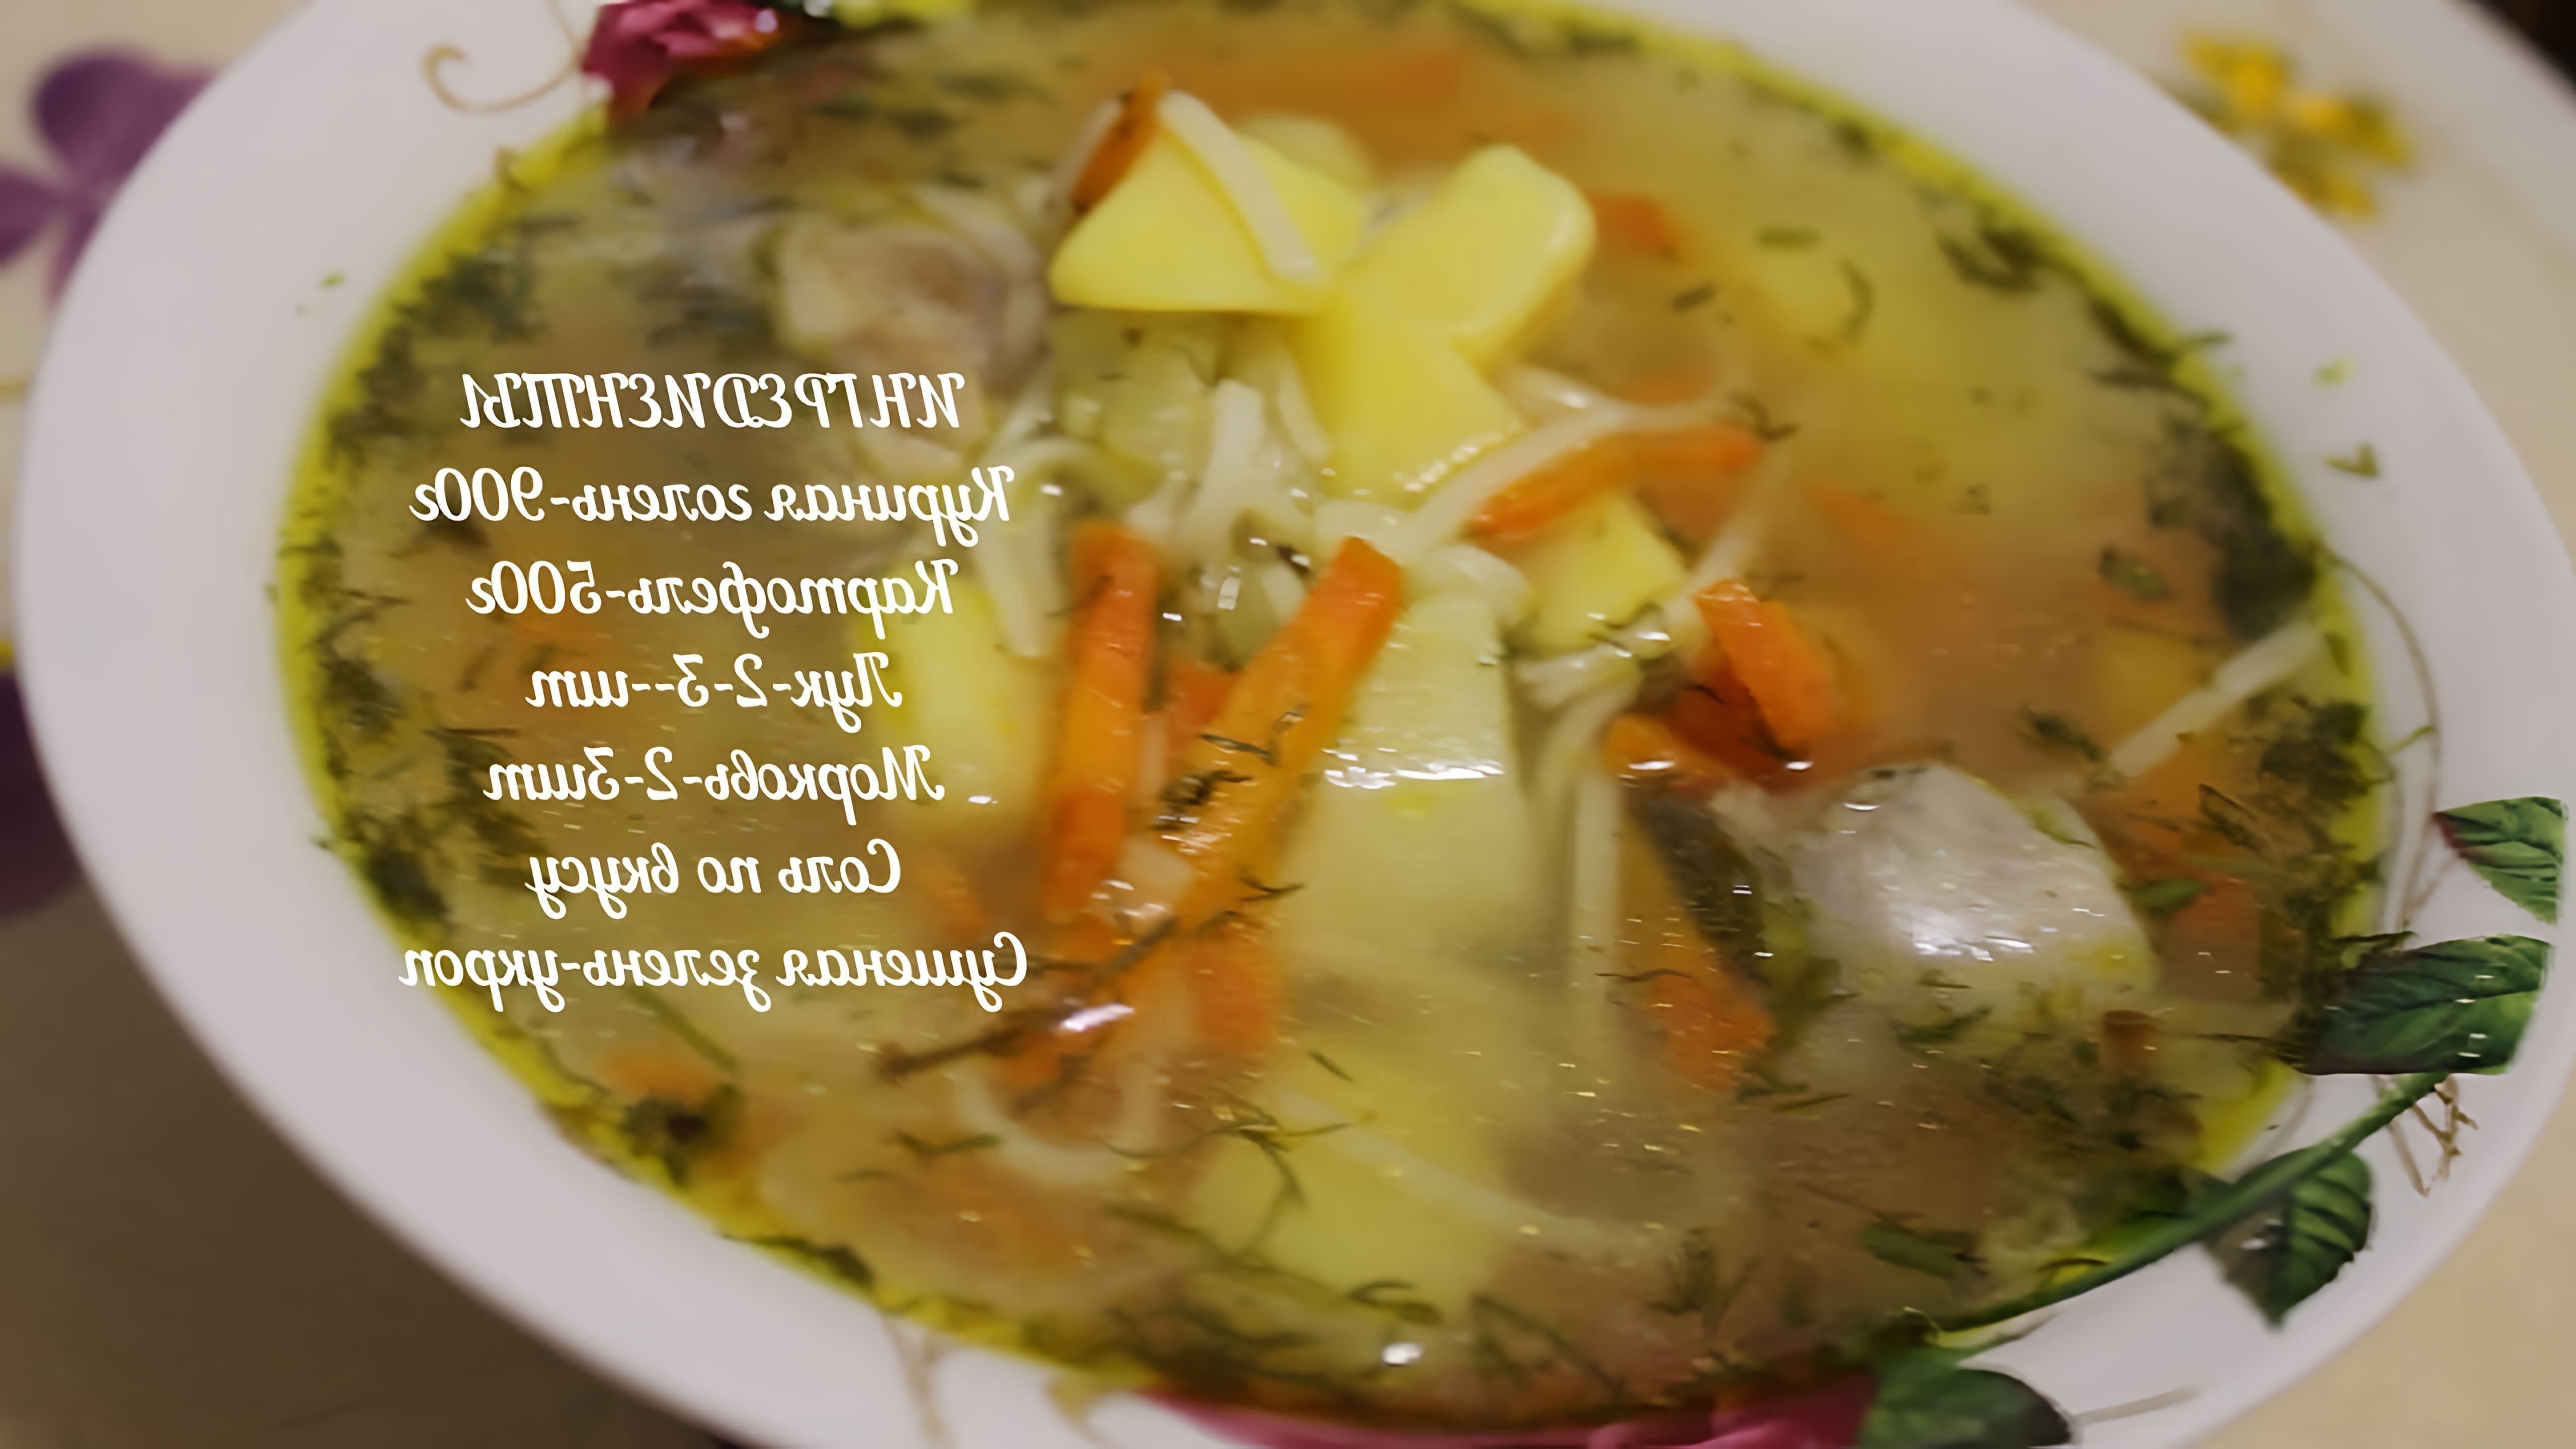 Куриный суп с лапшой - это вкусное и питательное блюдо, которое можно приготовить в домашних условиях